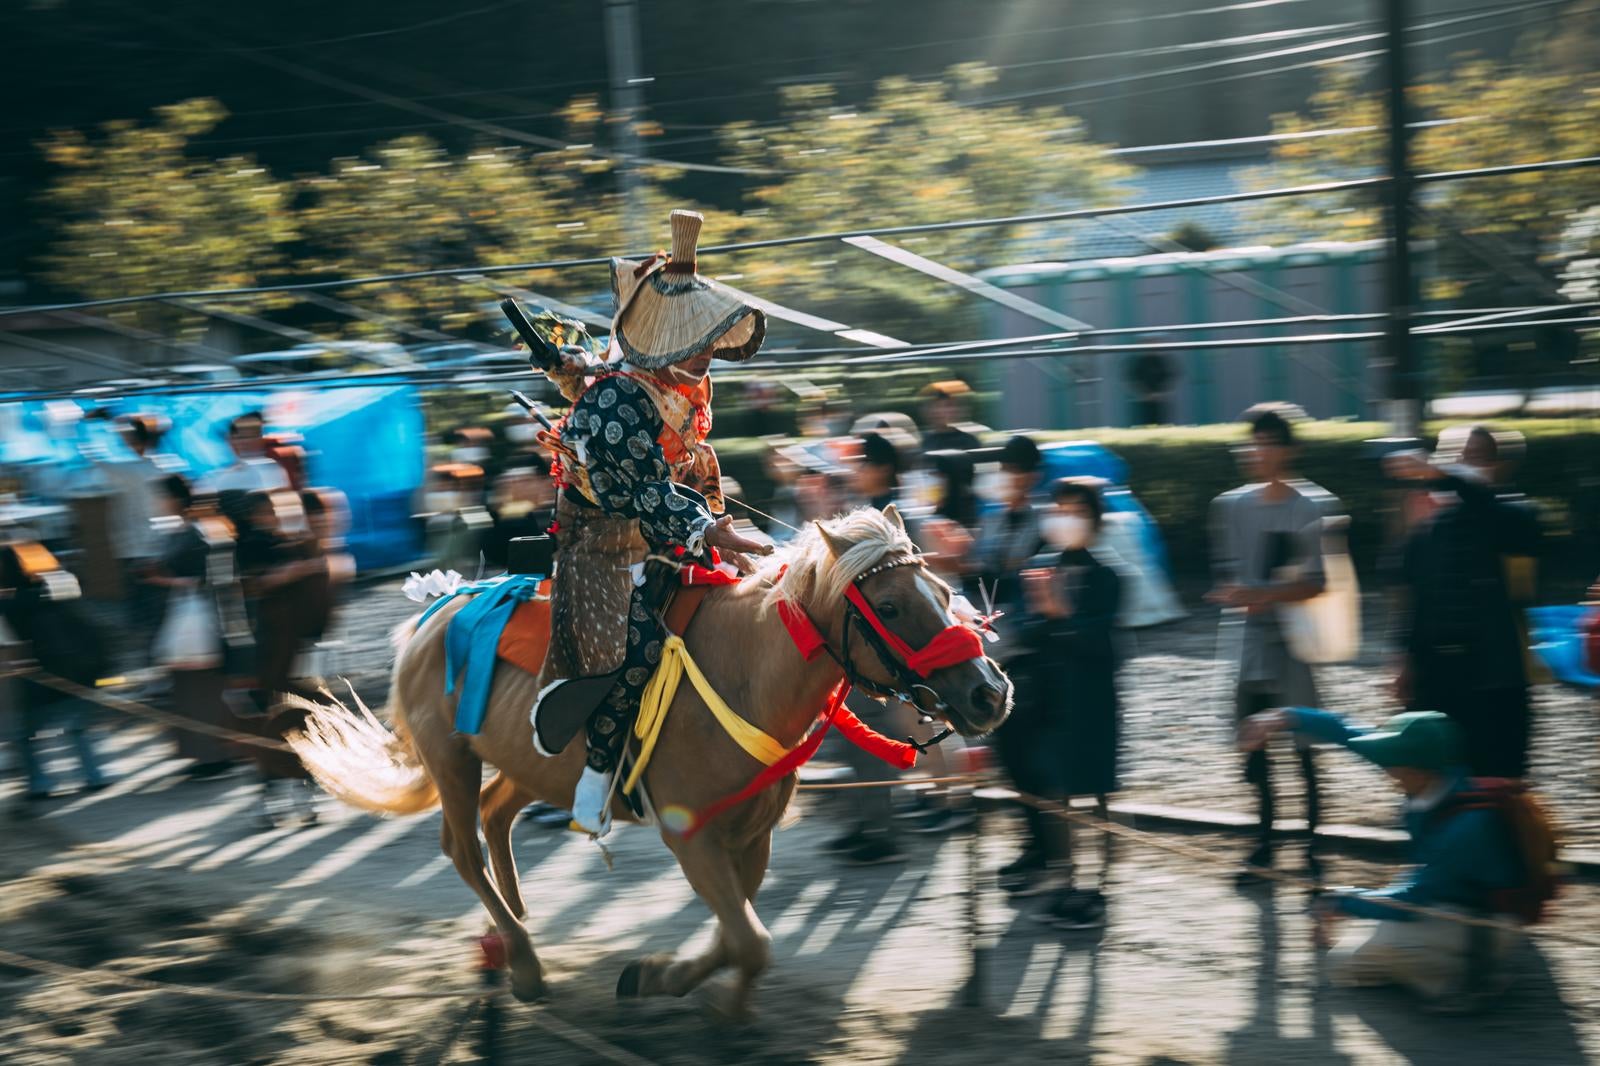 「古殿八幡神社例大祭の騎手と馬が一体となって駆け出す瞬間」の写真